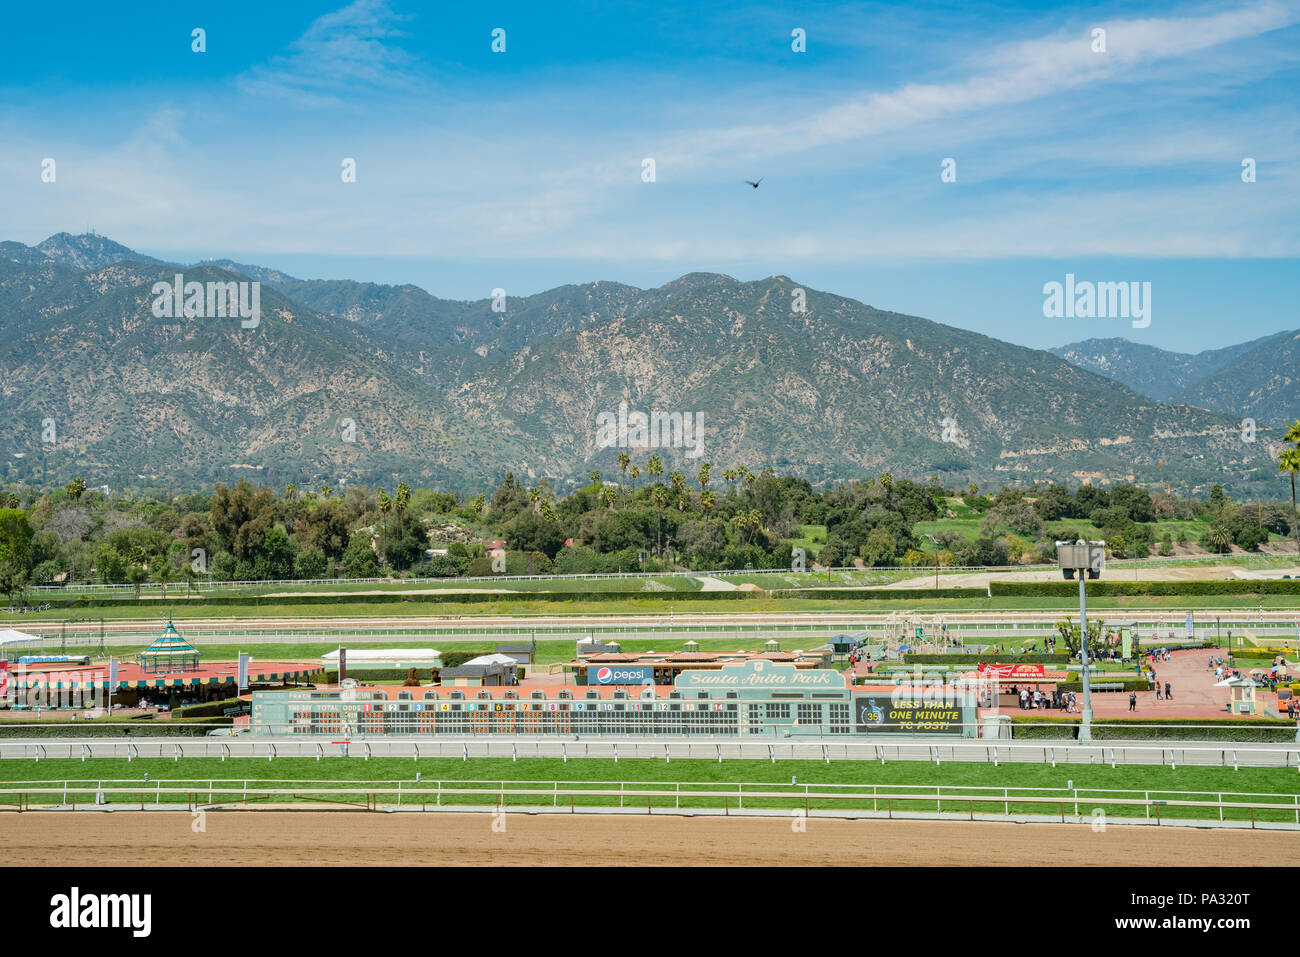 Los Angeles, 8 de abr de: carreras de caballos en Santa Anita Park el 8 de abril de 2018, en Los Angeles, California Foto de stock